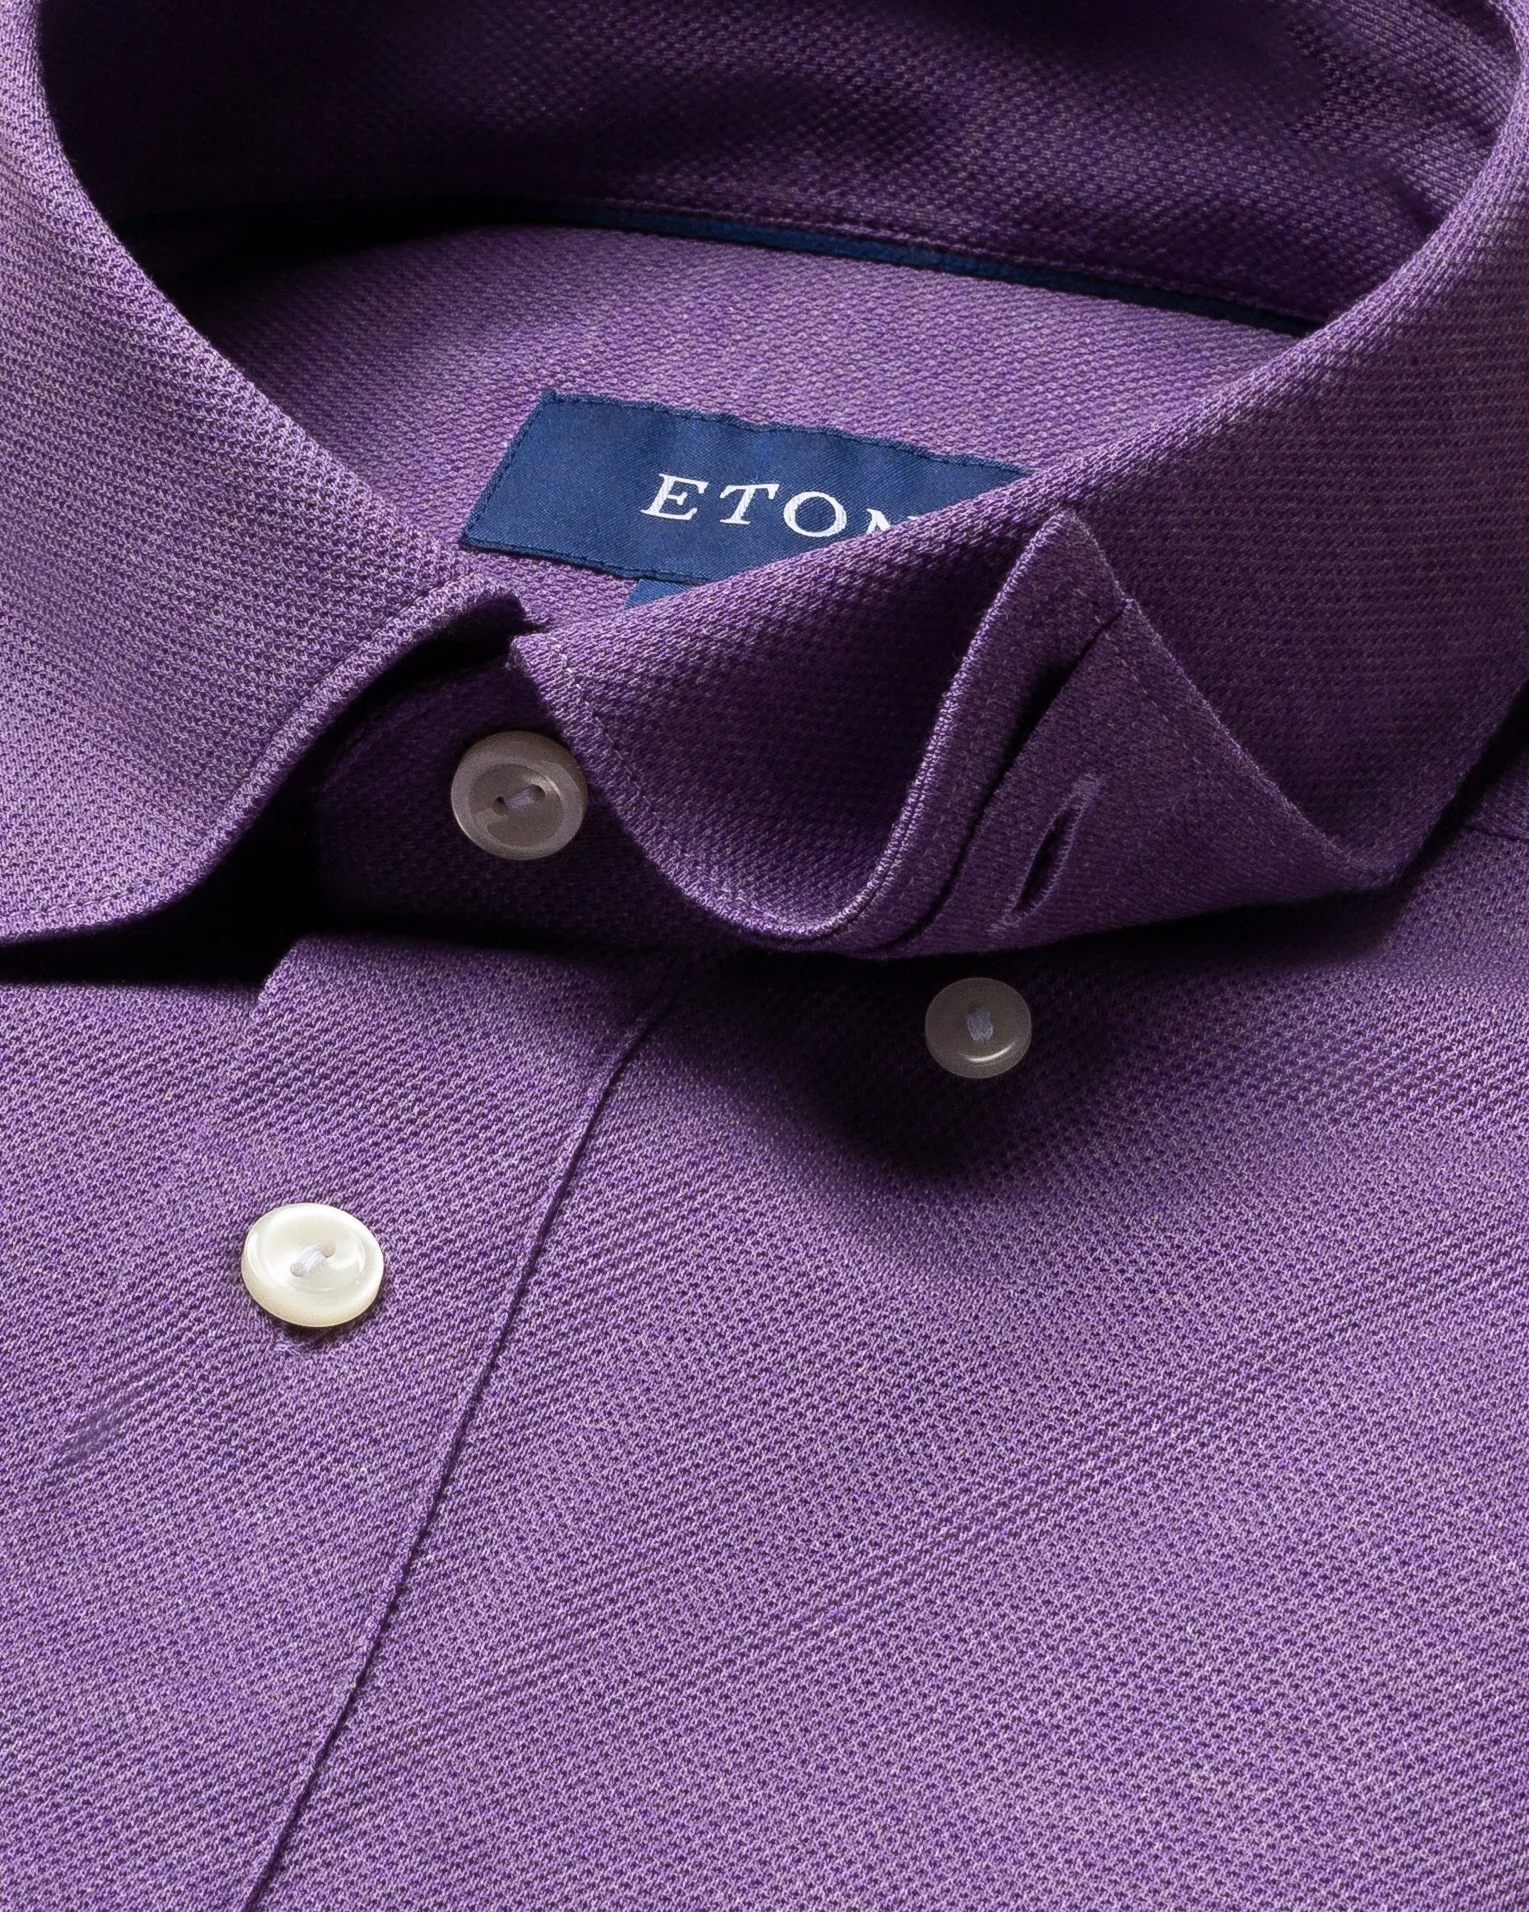 Eton - purple pique